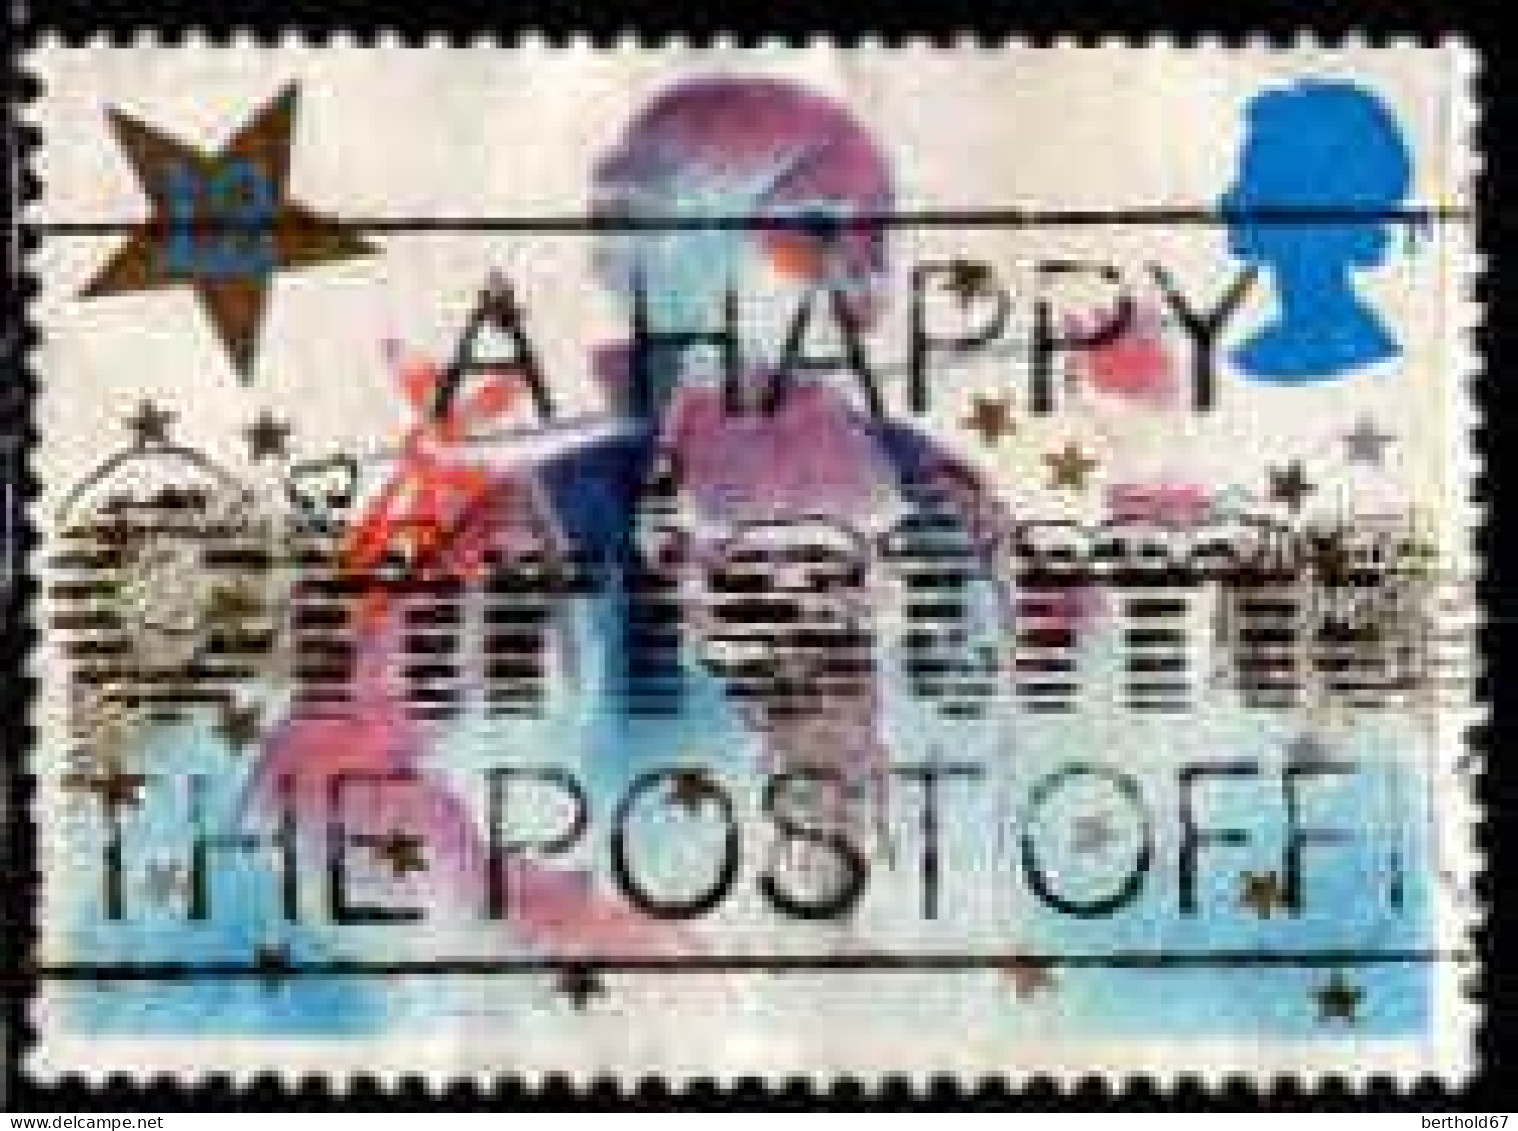 GB Poste Obl Yv:1202 Mi:1051I Noël (Belle Obl.mécanique) - Used Stamps